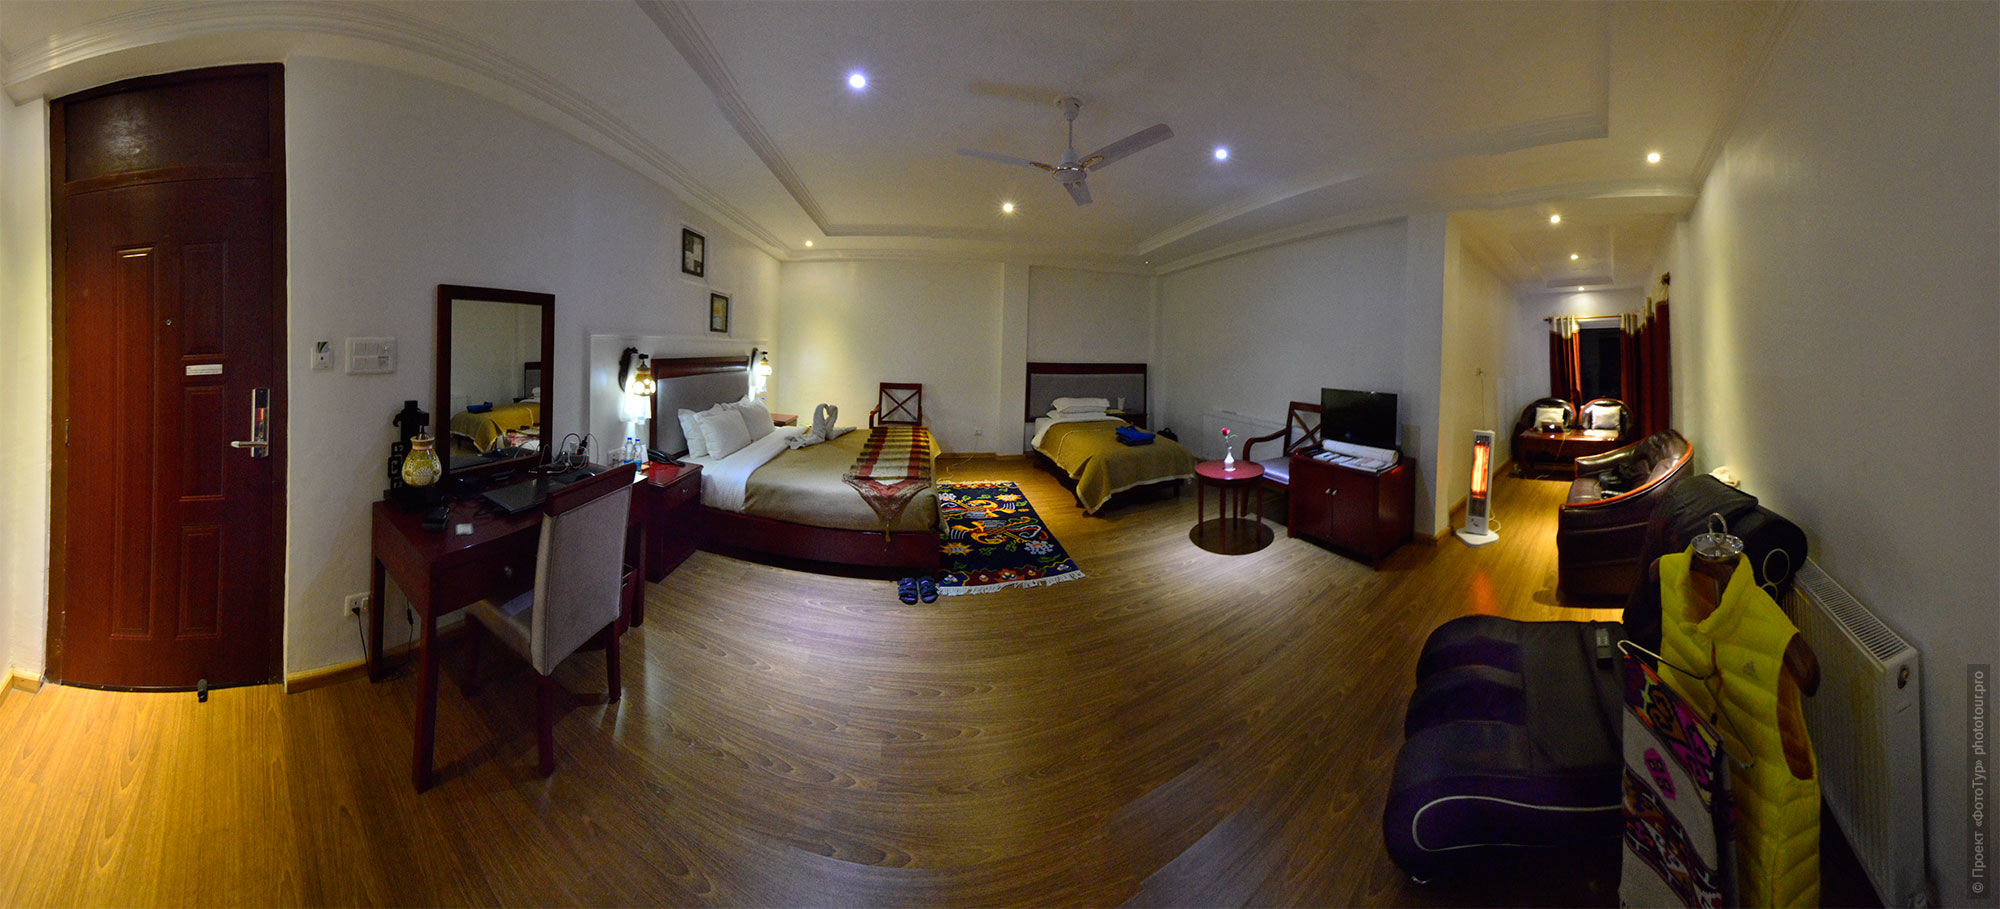 Room in the hotel Zen, Leh, Ladakh, Little Tibet, India.